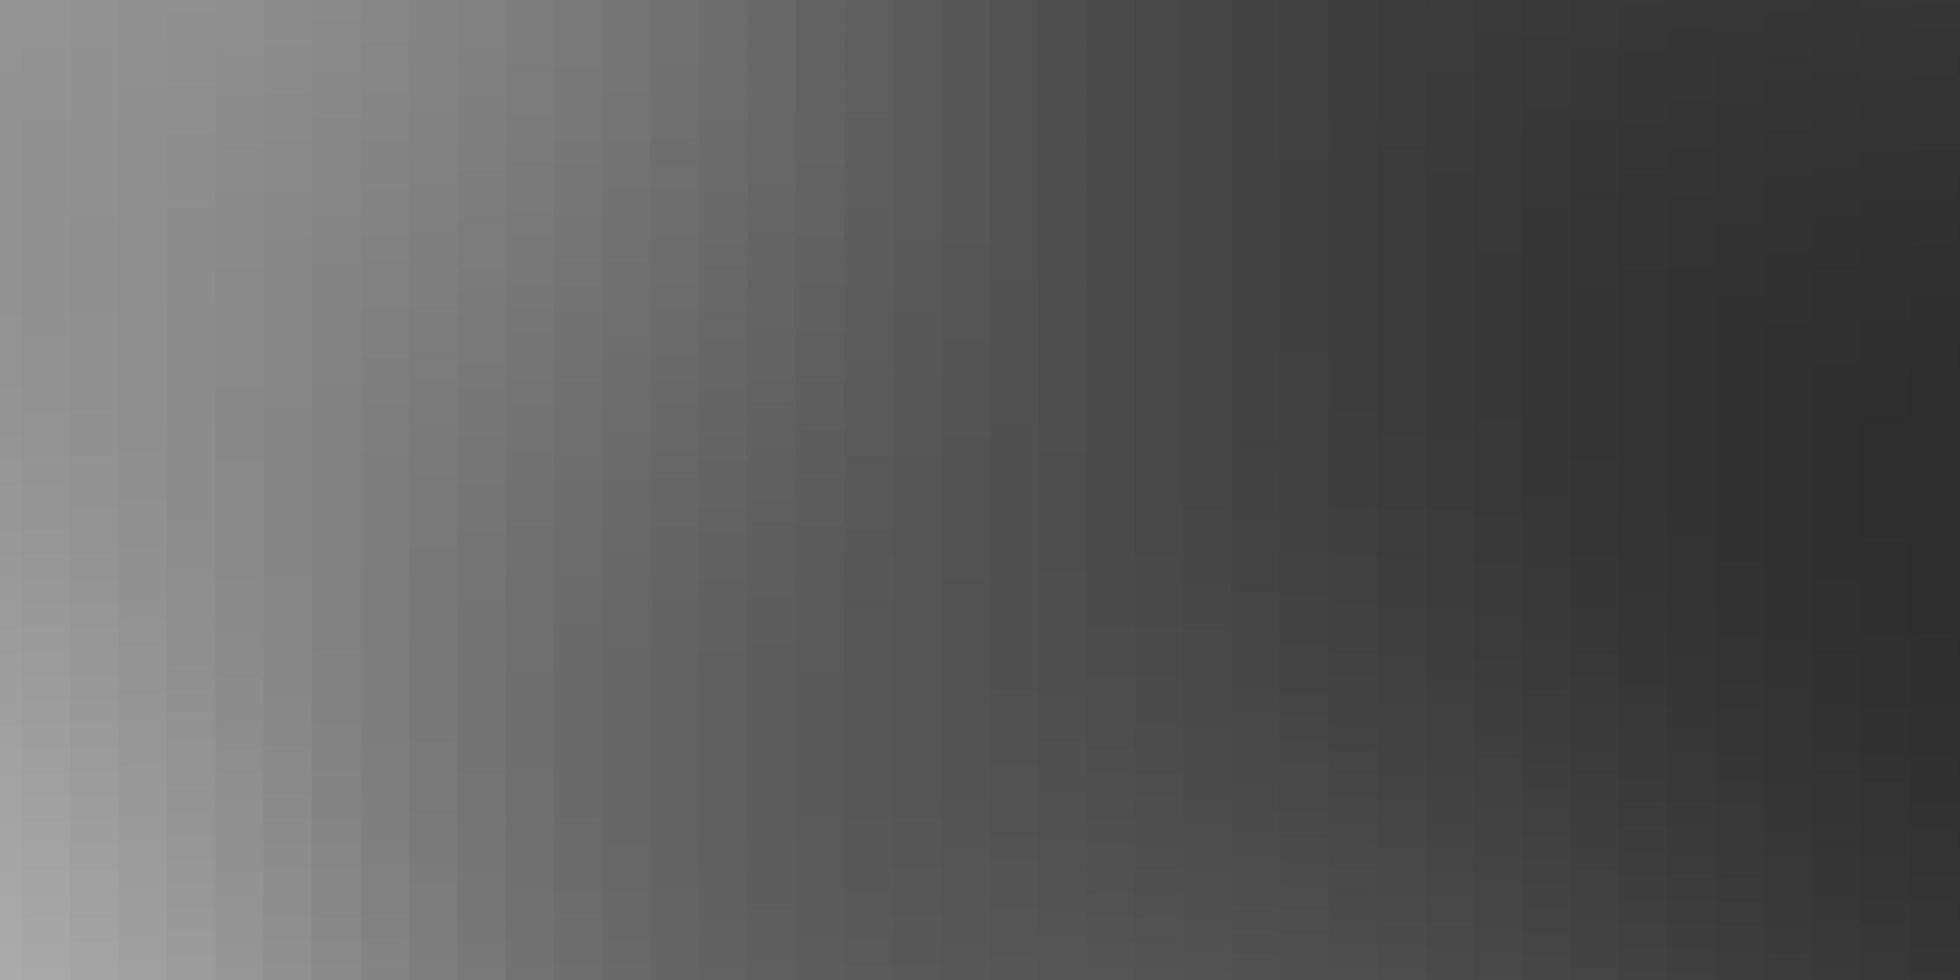 sfondo vettoriale grigio chiaro con rettangoli.